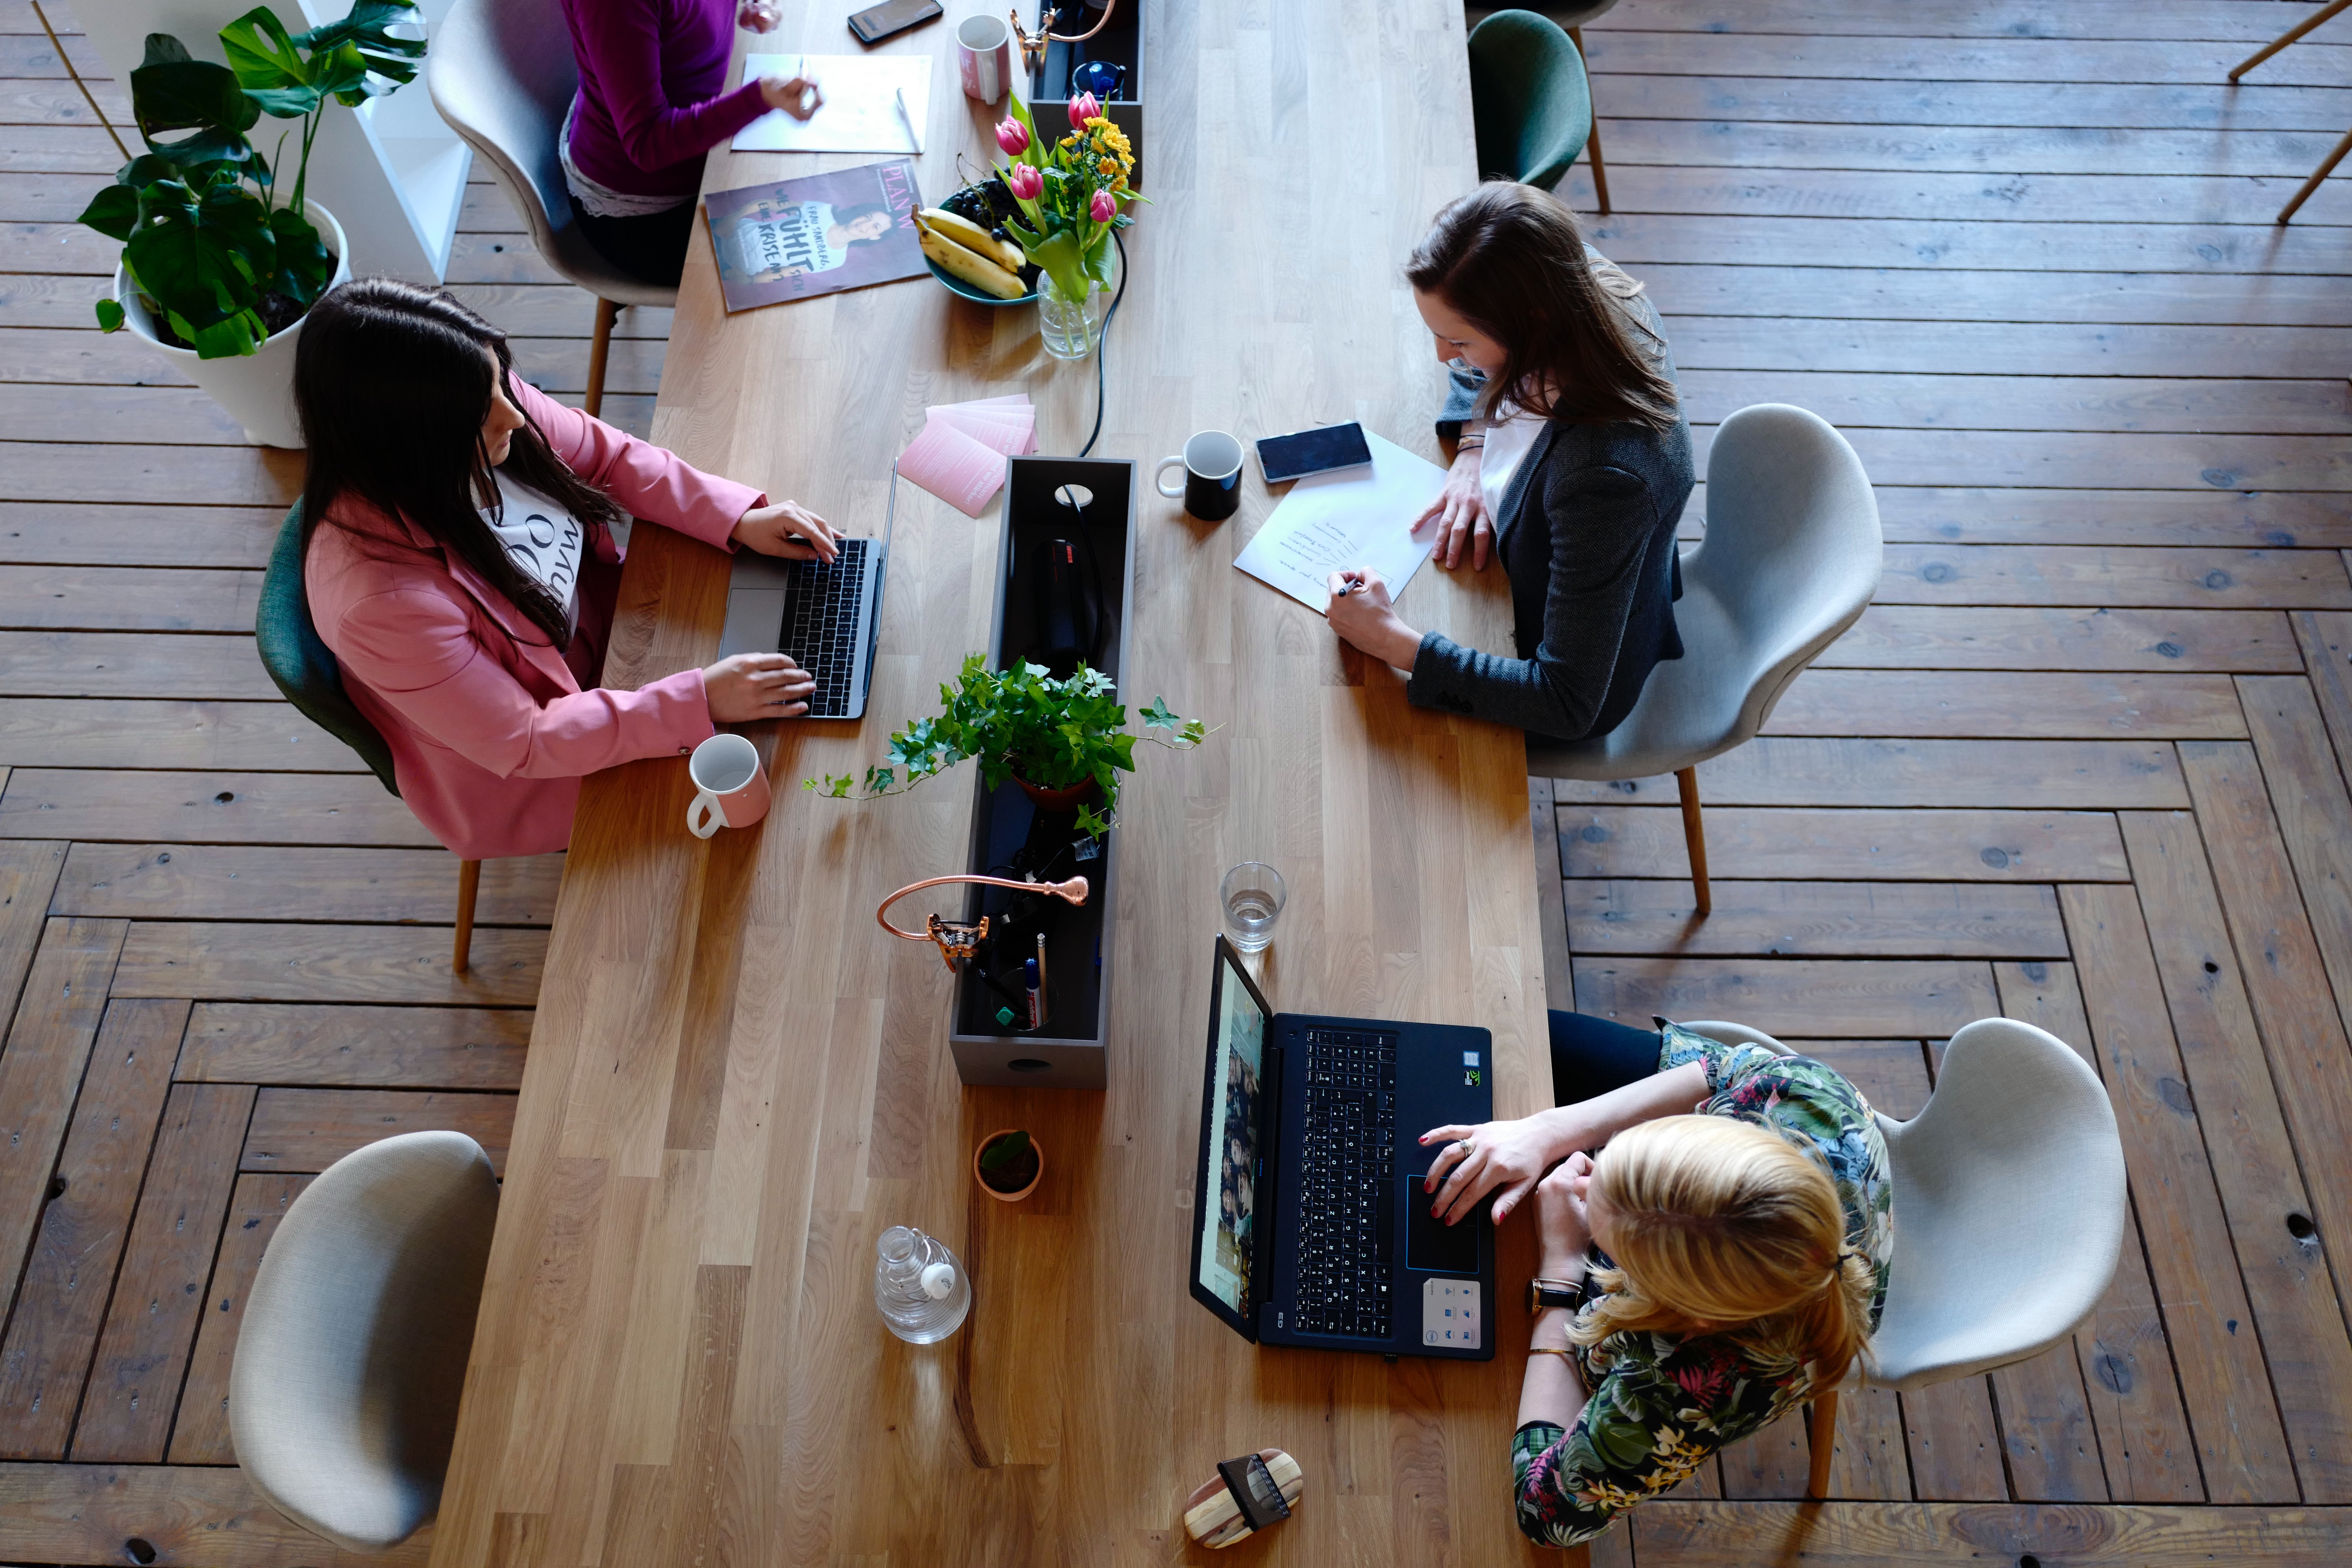 Noies treballant en una taula. Font: Pexels - CoWomen